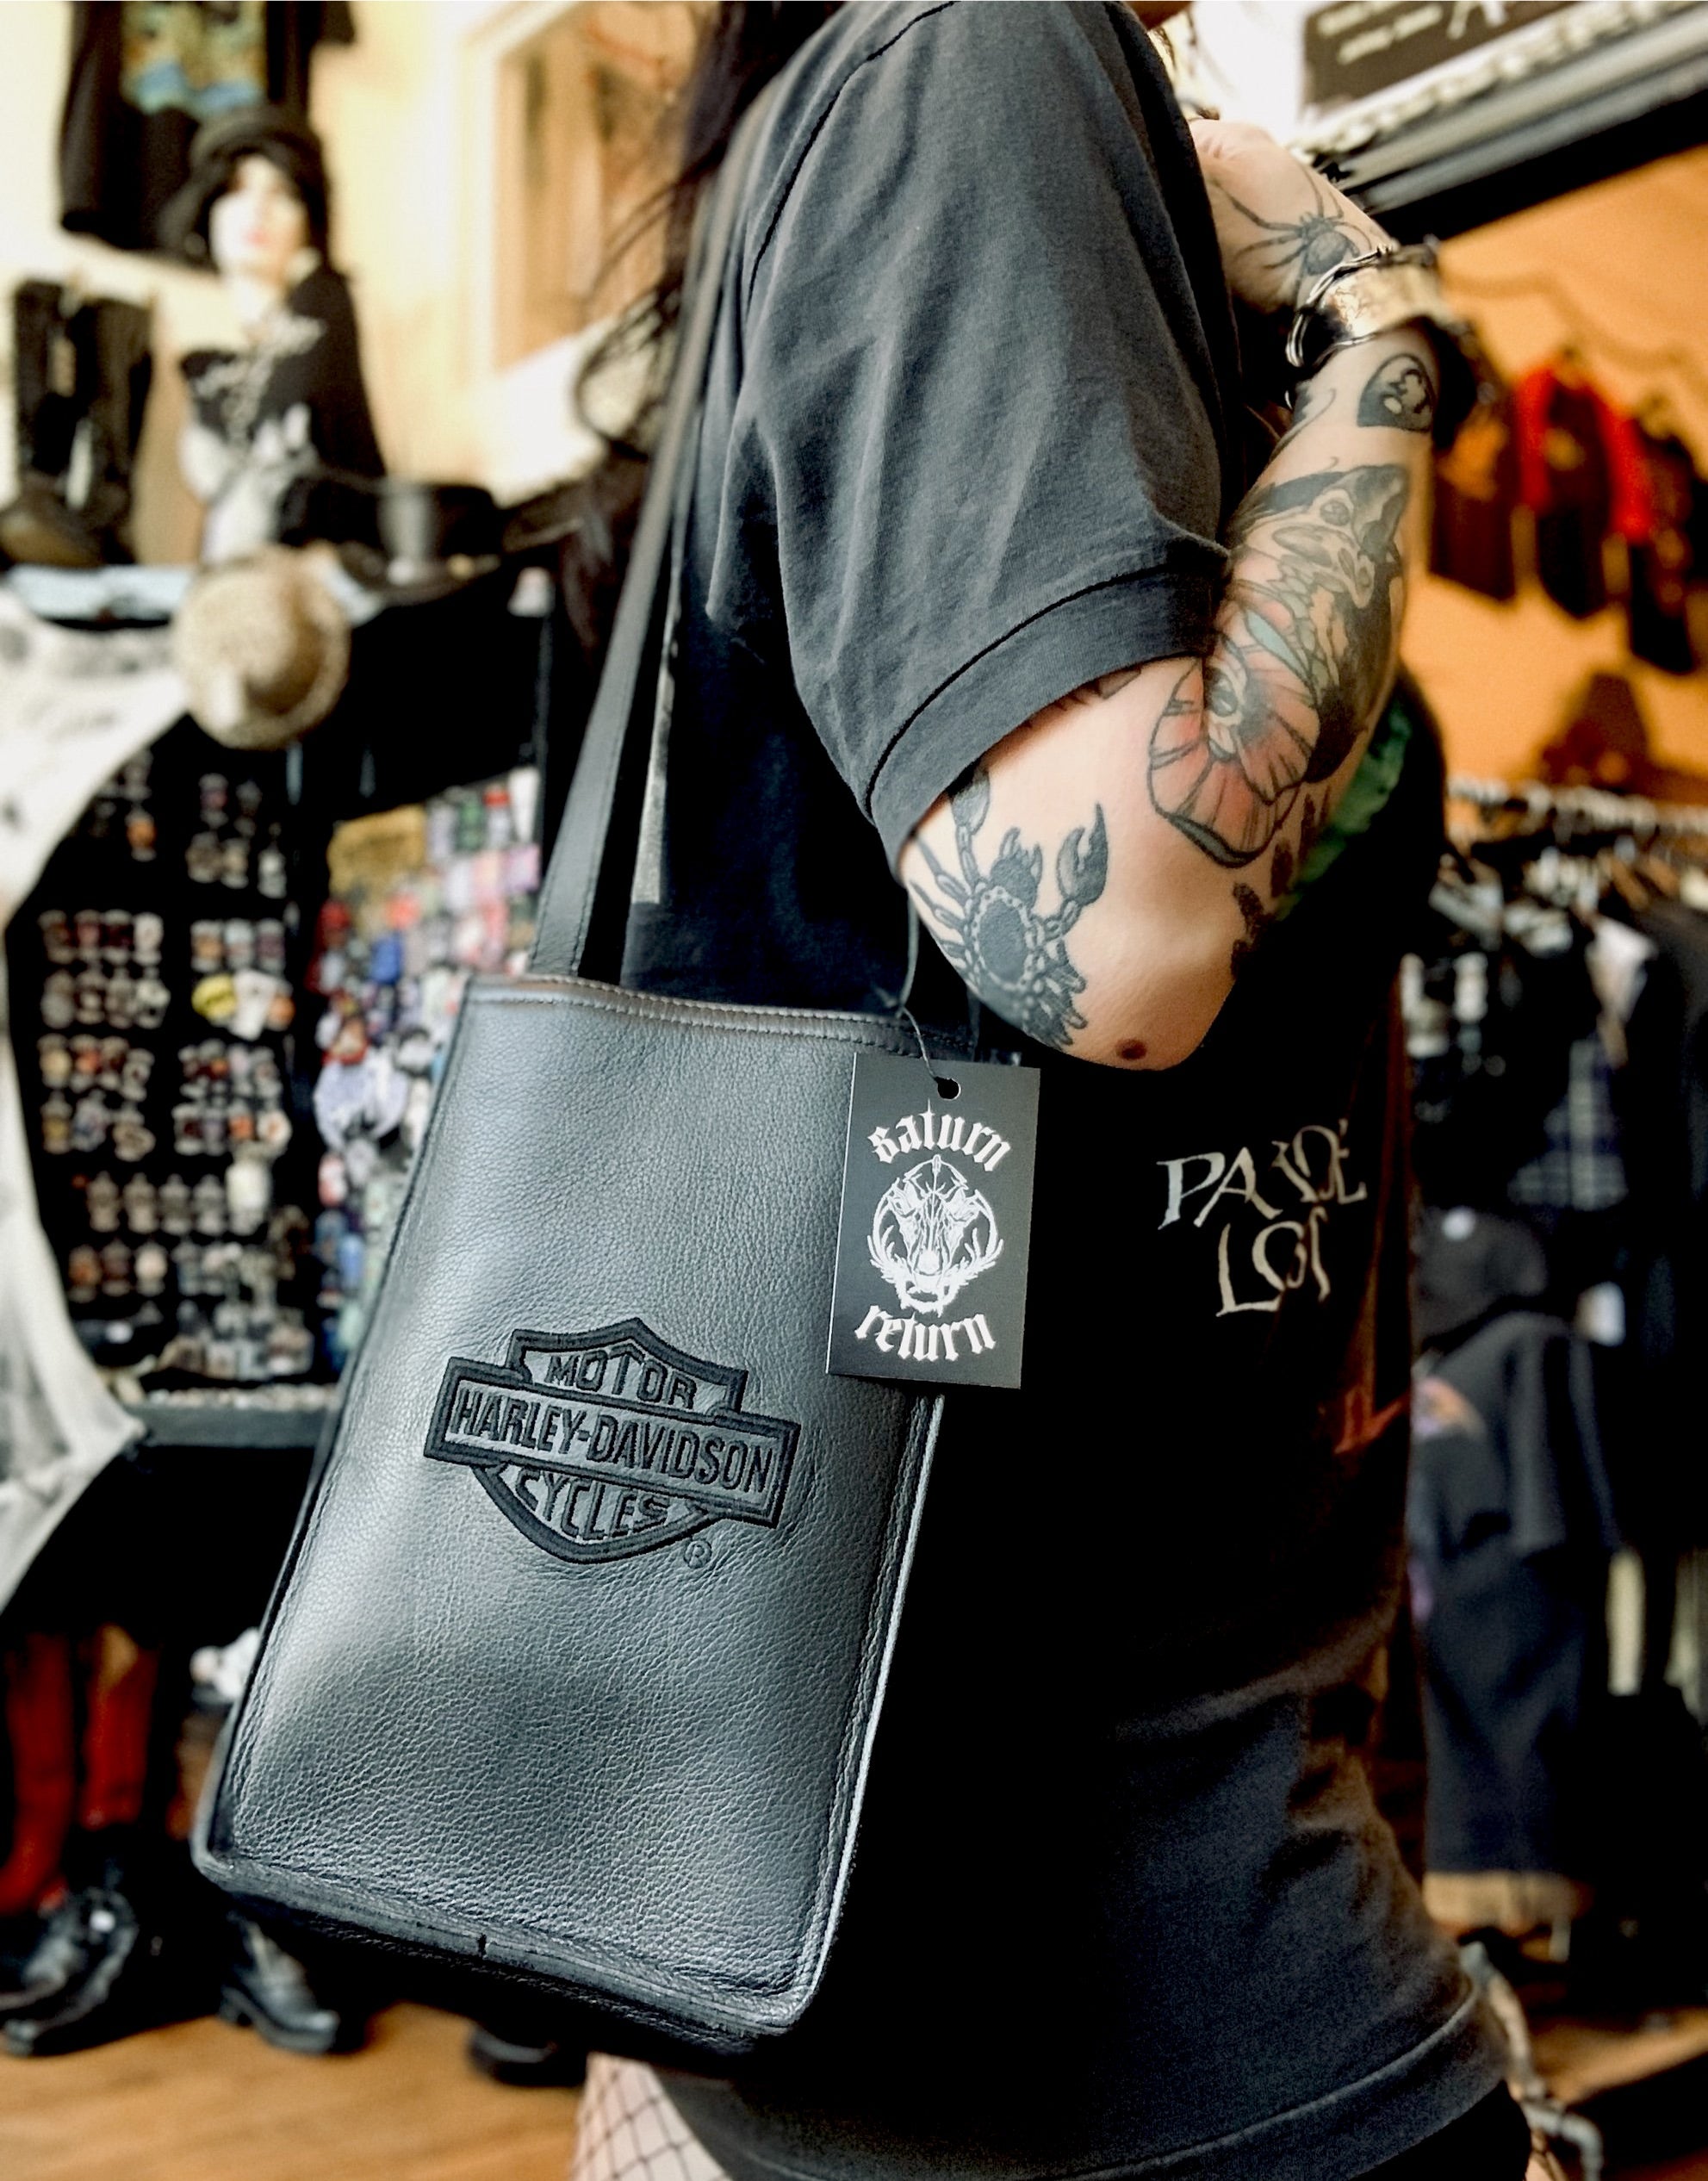 Harley-Davidson Leather Shoulder Bags